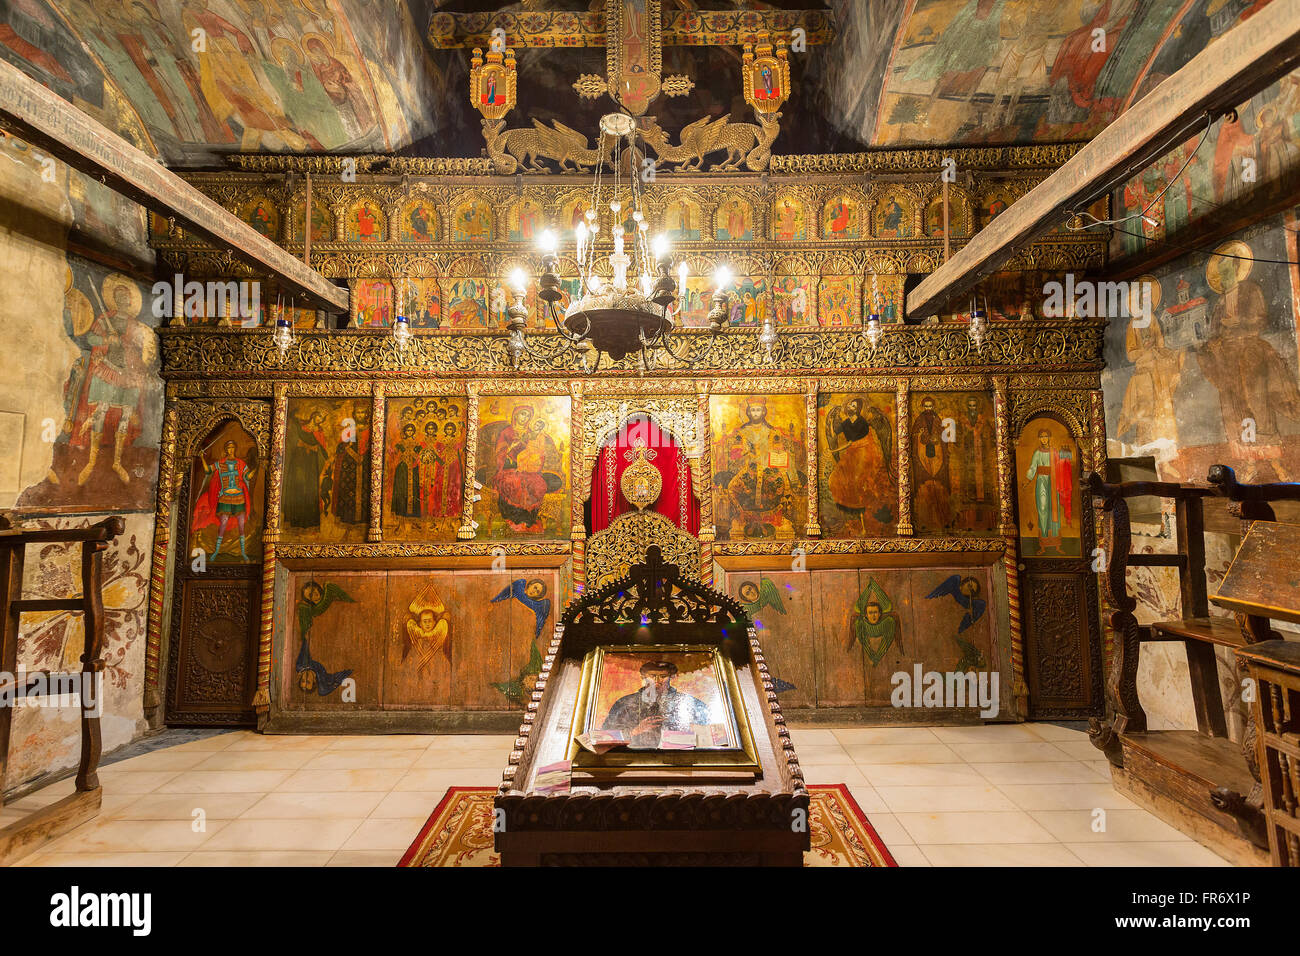 Republik Mazedonien, Ohrid, Weltkulturerbe von der UNESCO, das Kloster St. Naum Stockfoto